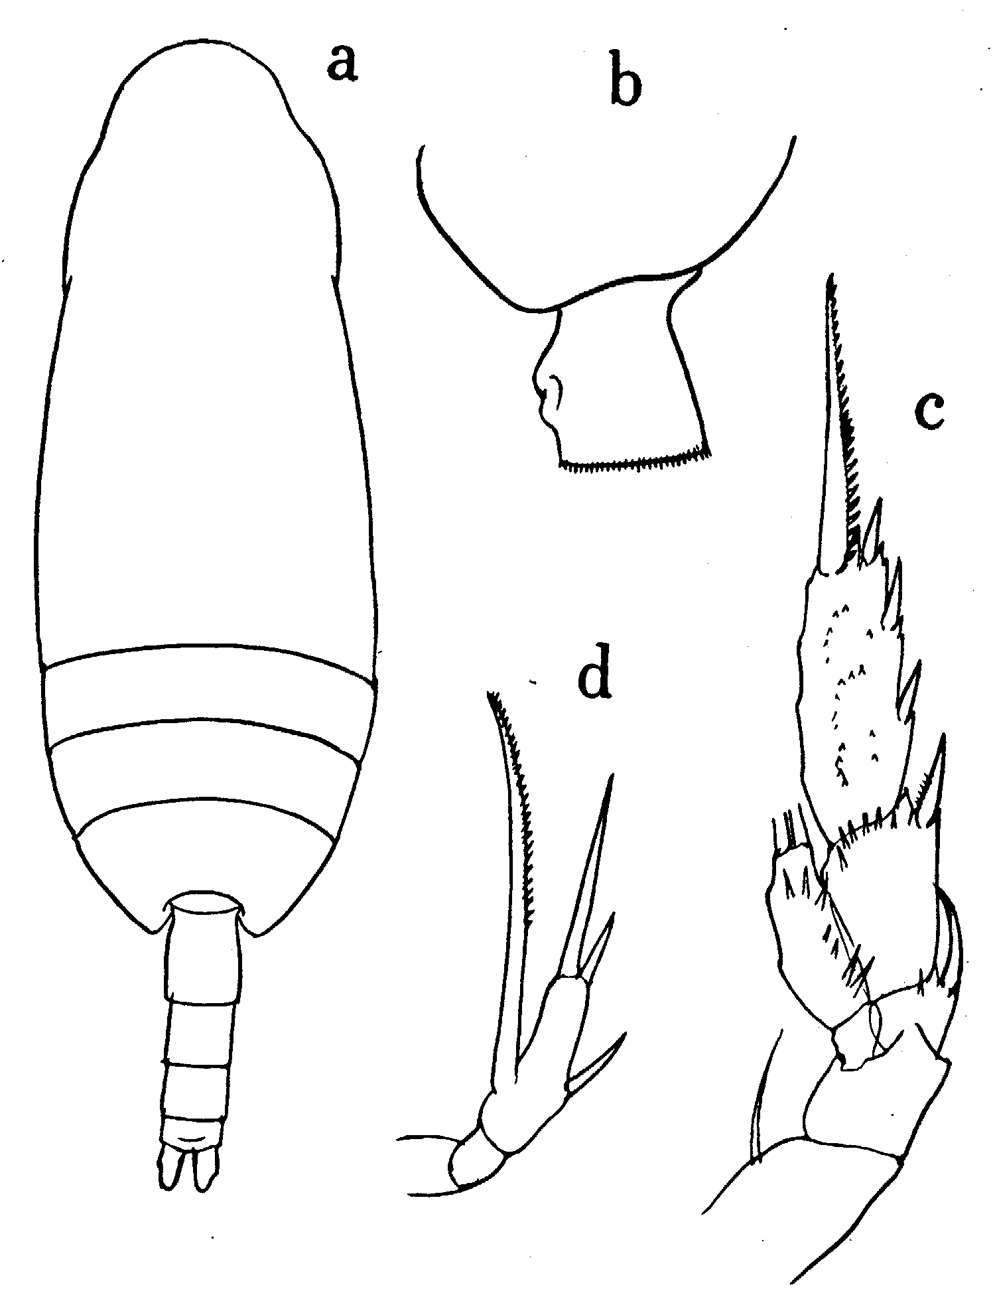 Espèce Scaphocalanus impar - Planche 1 de figures morphologiques